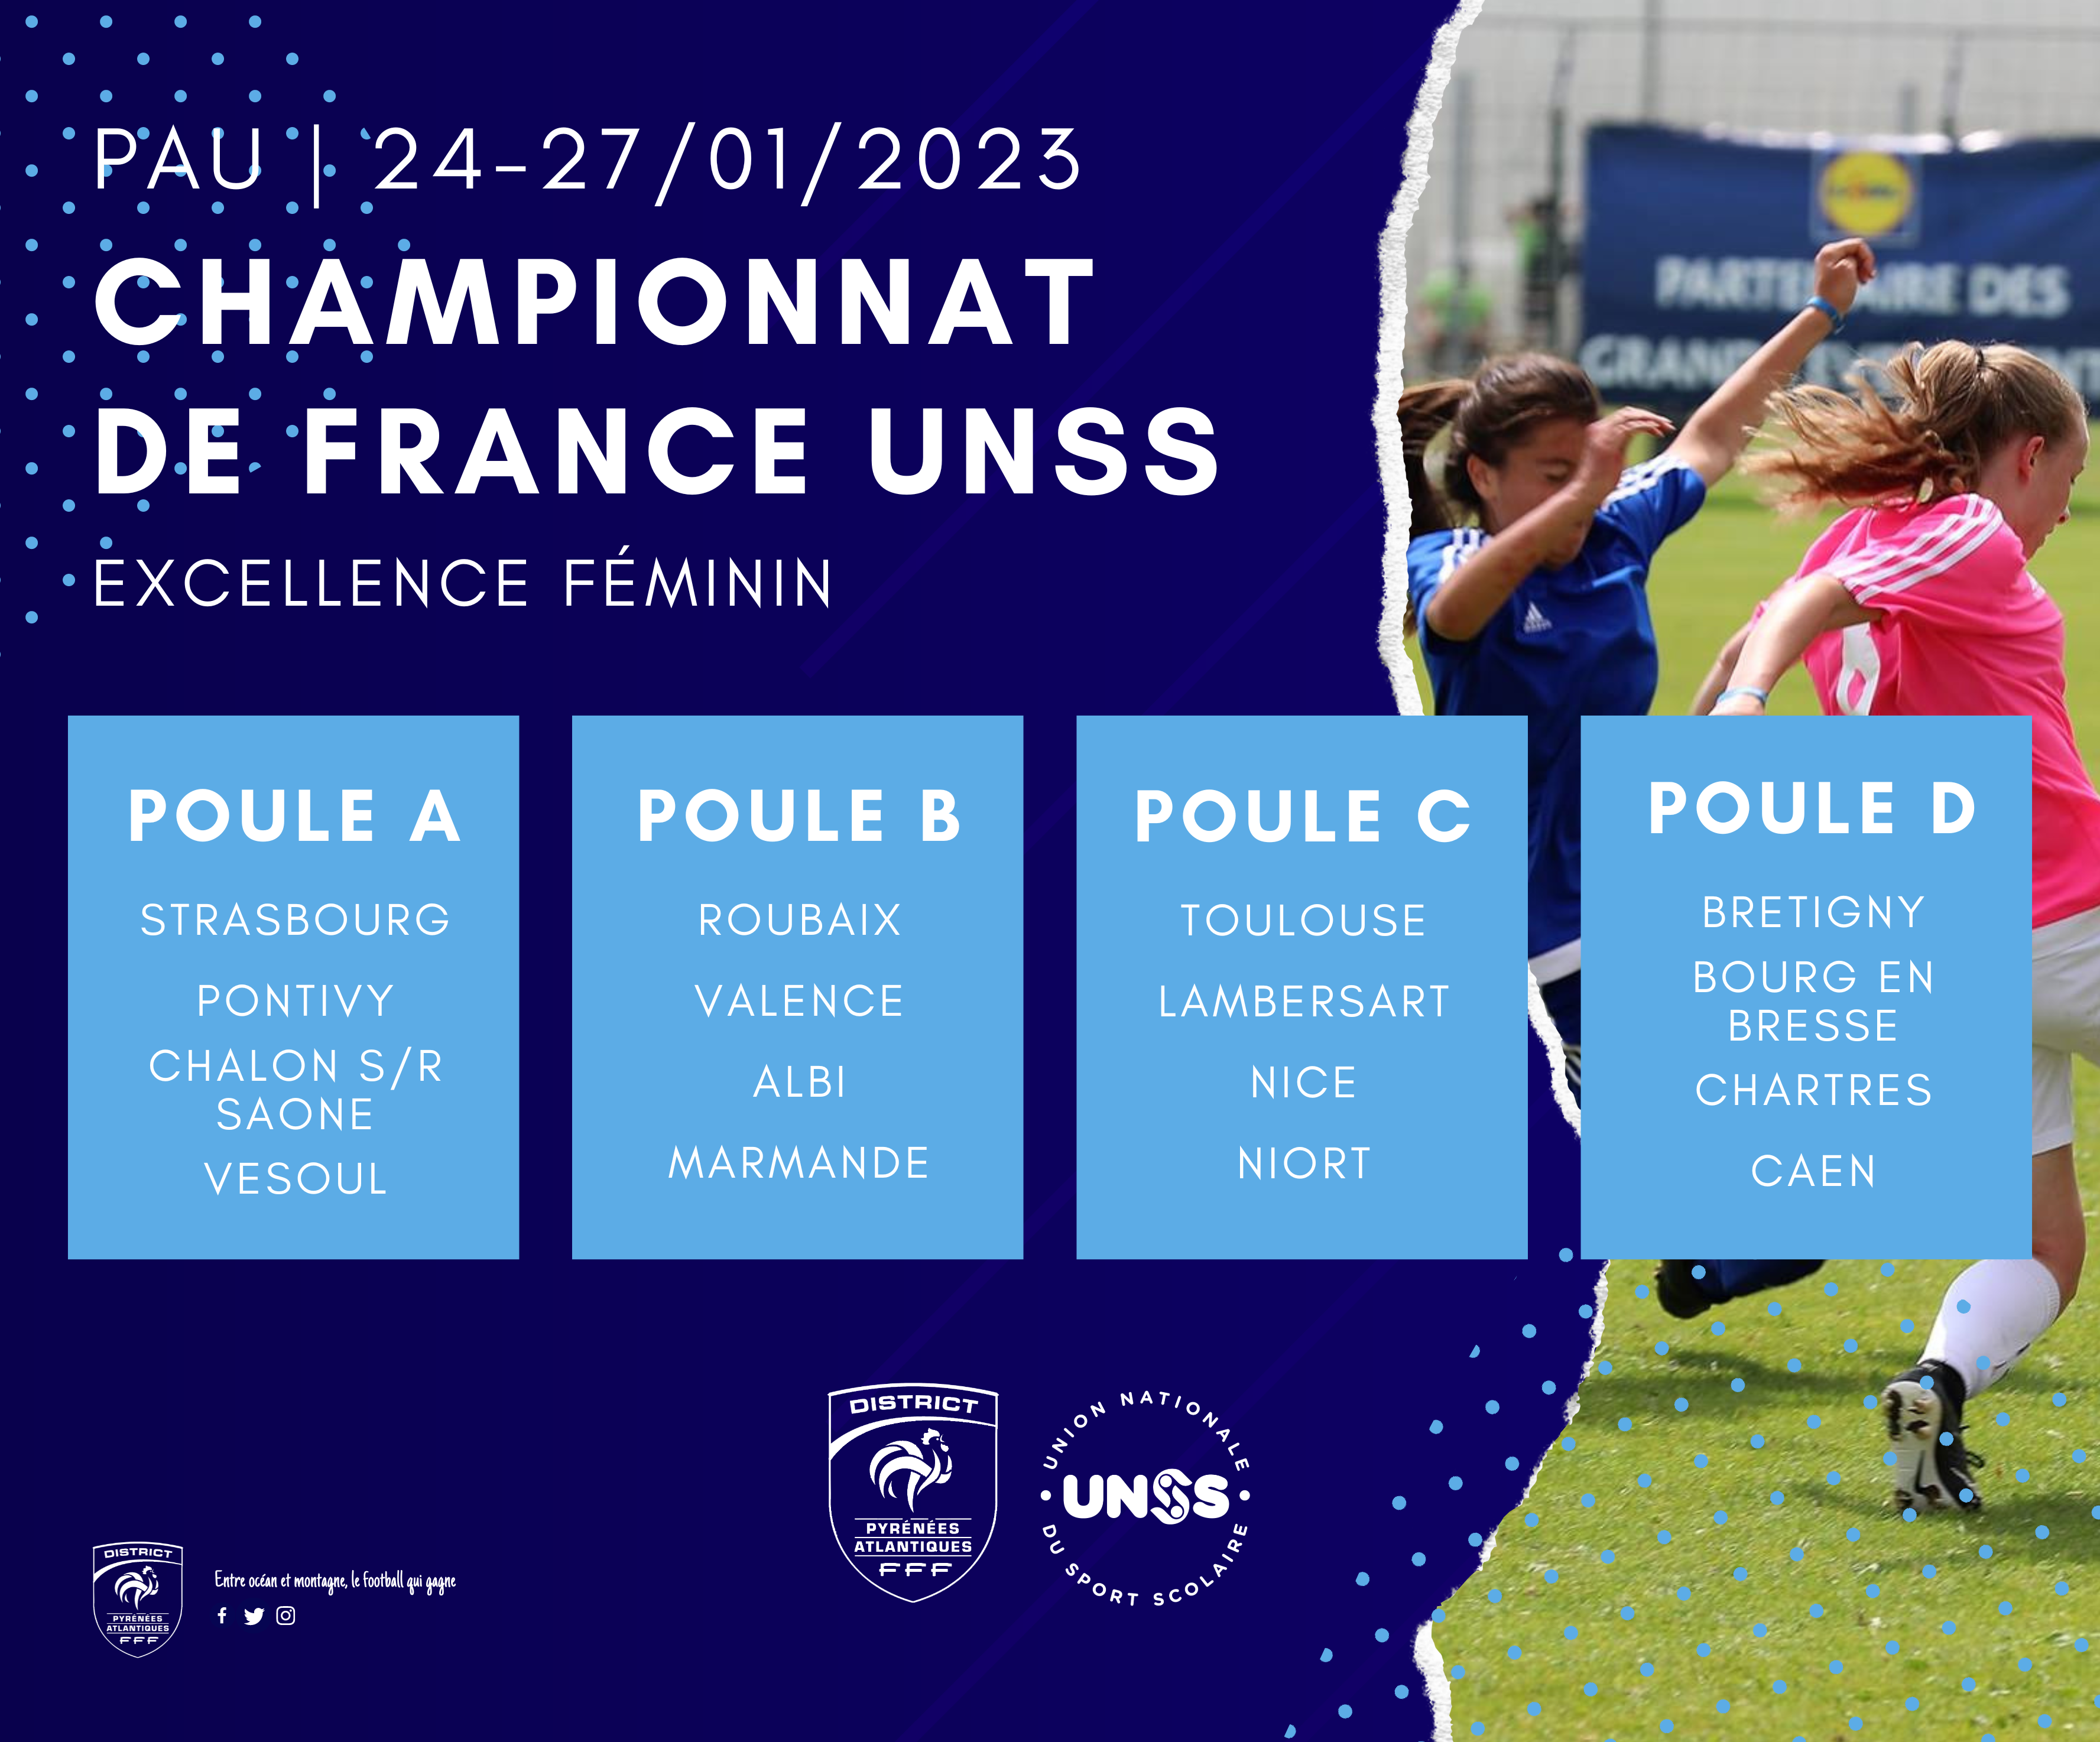 Le championnat de France UNSS Excellence Féminin sinvite à picture